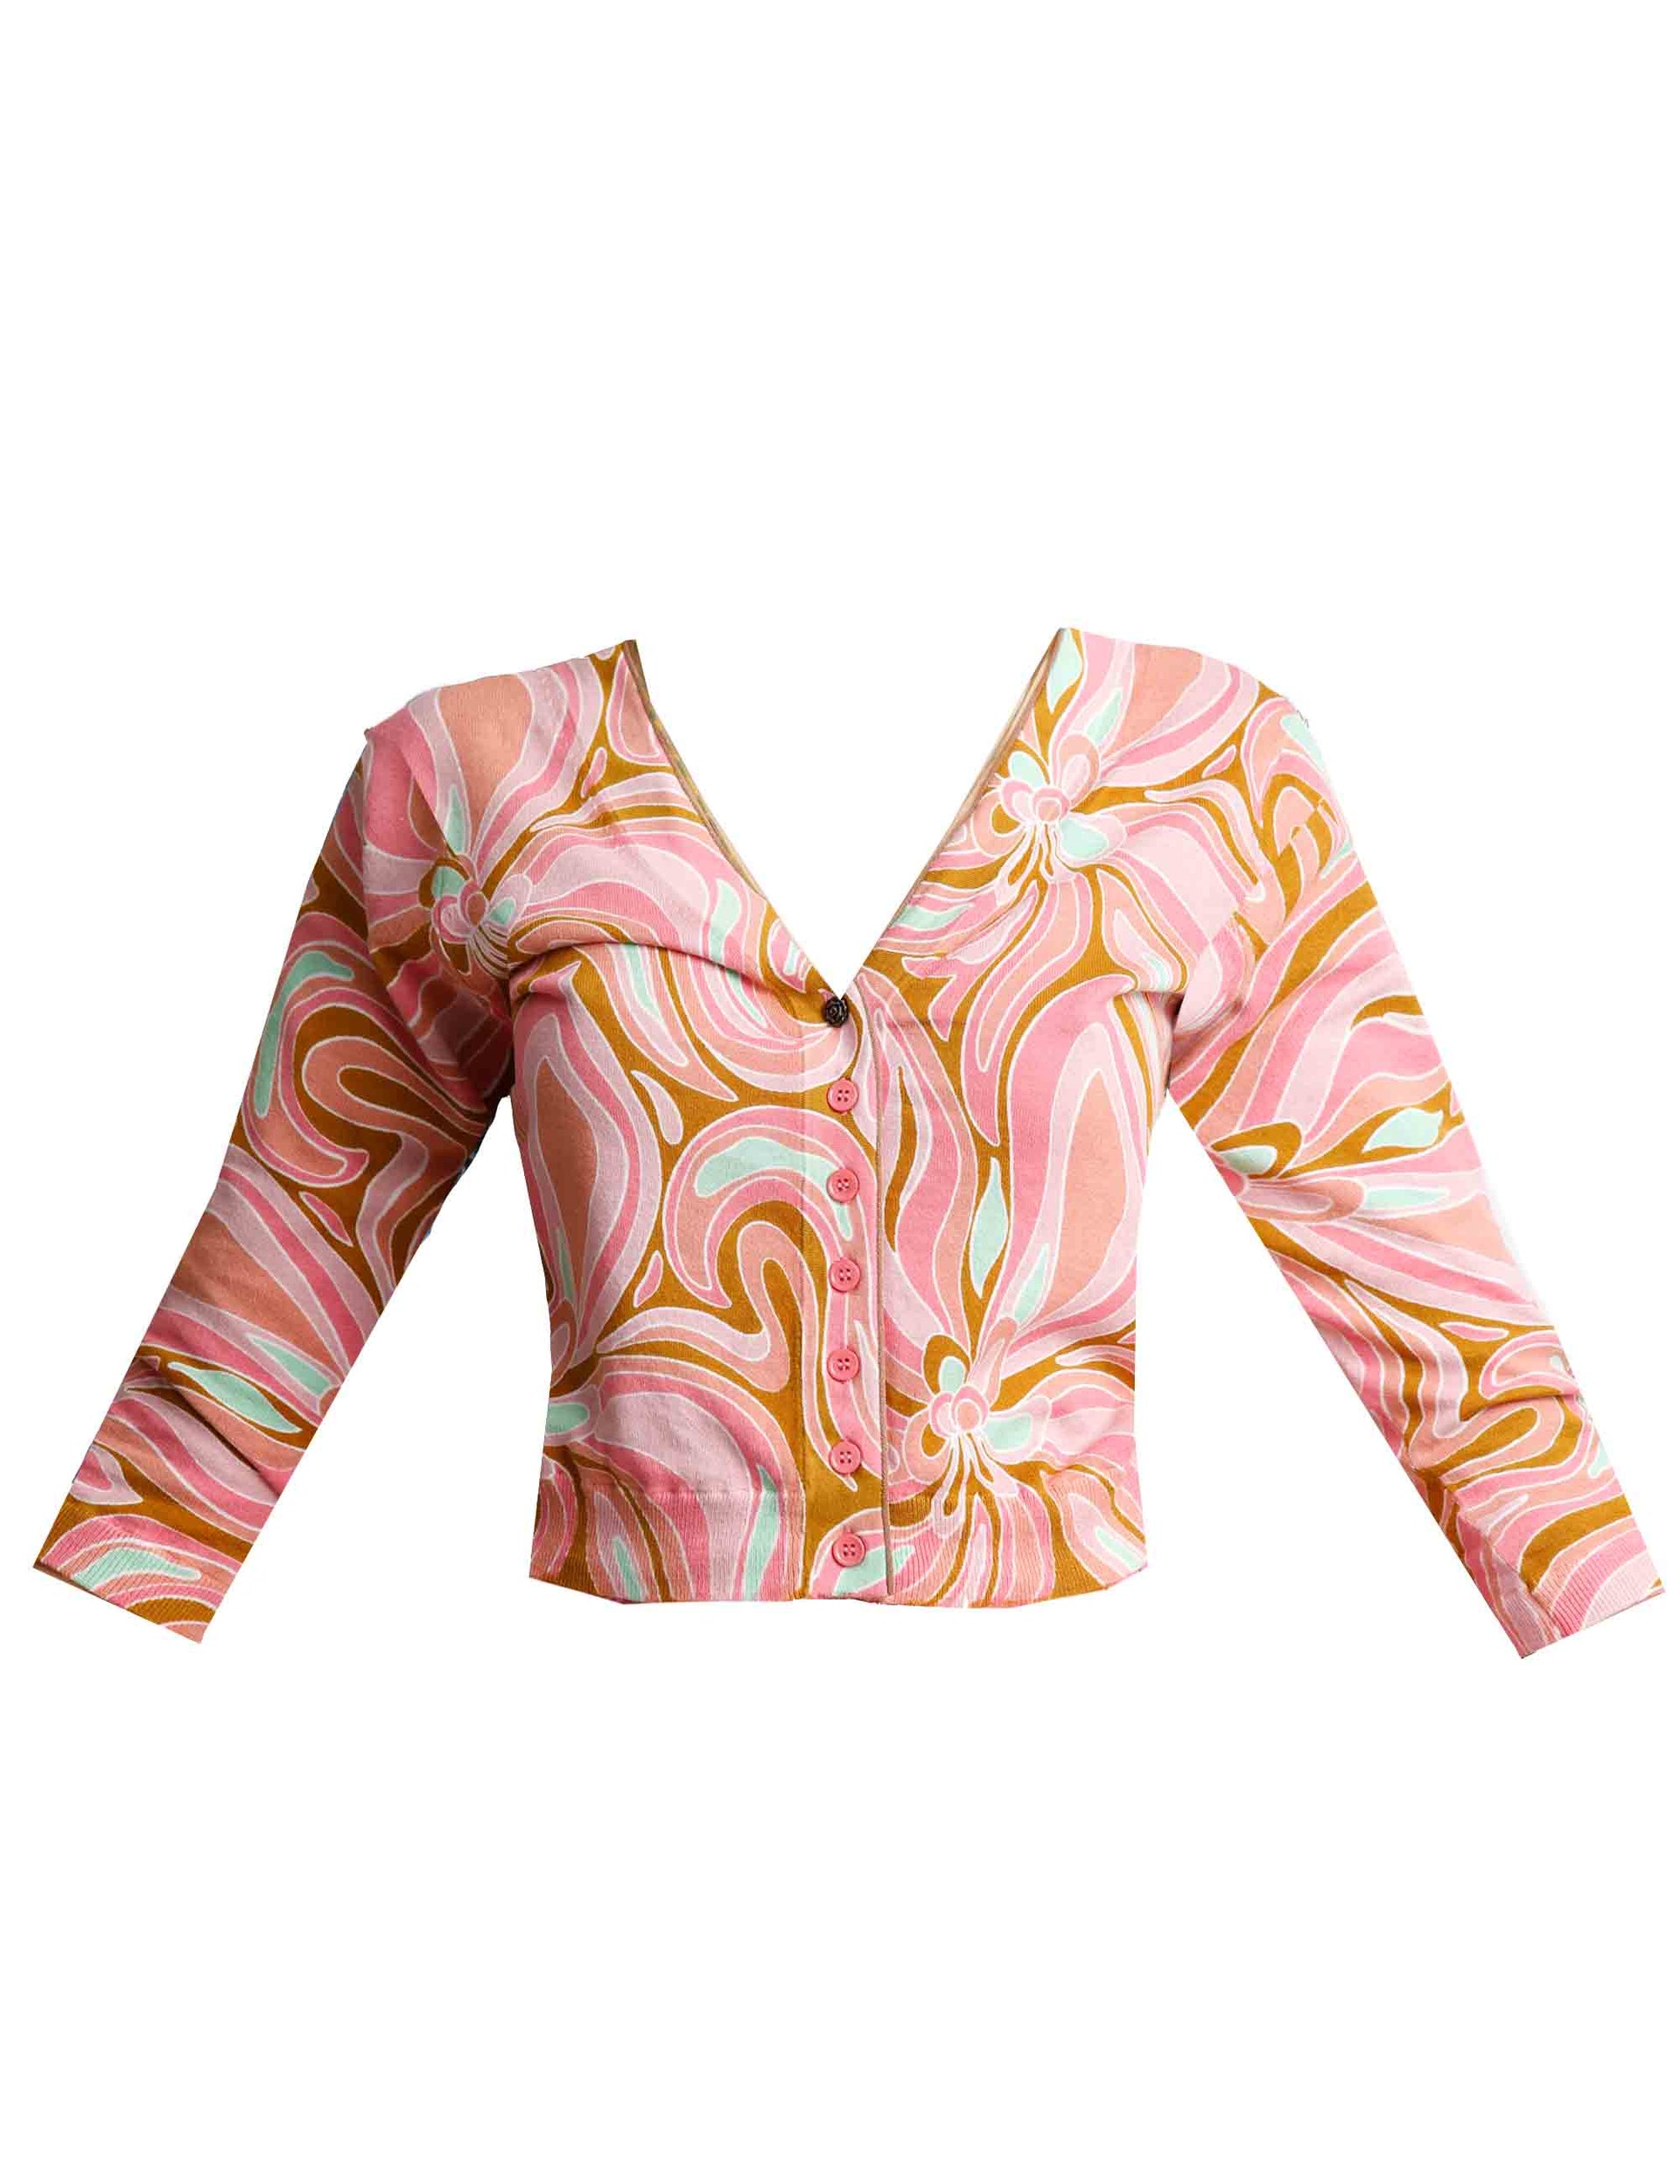 Maglie cardigan donna Printed in cotone rosa con maniche 3/4